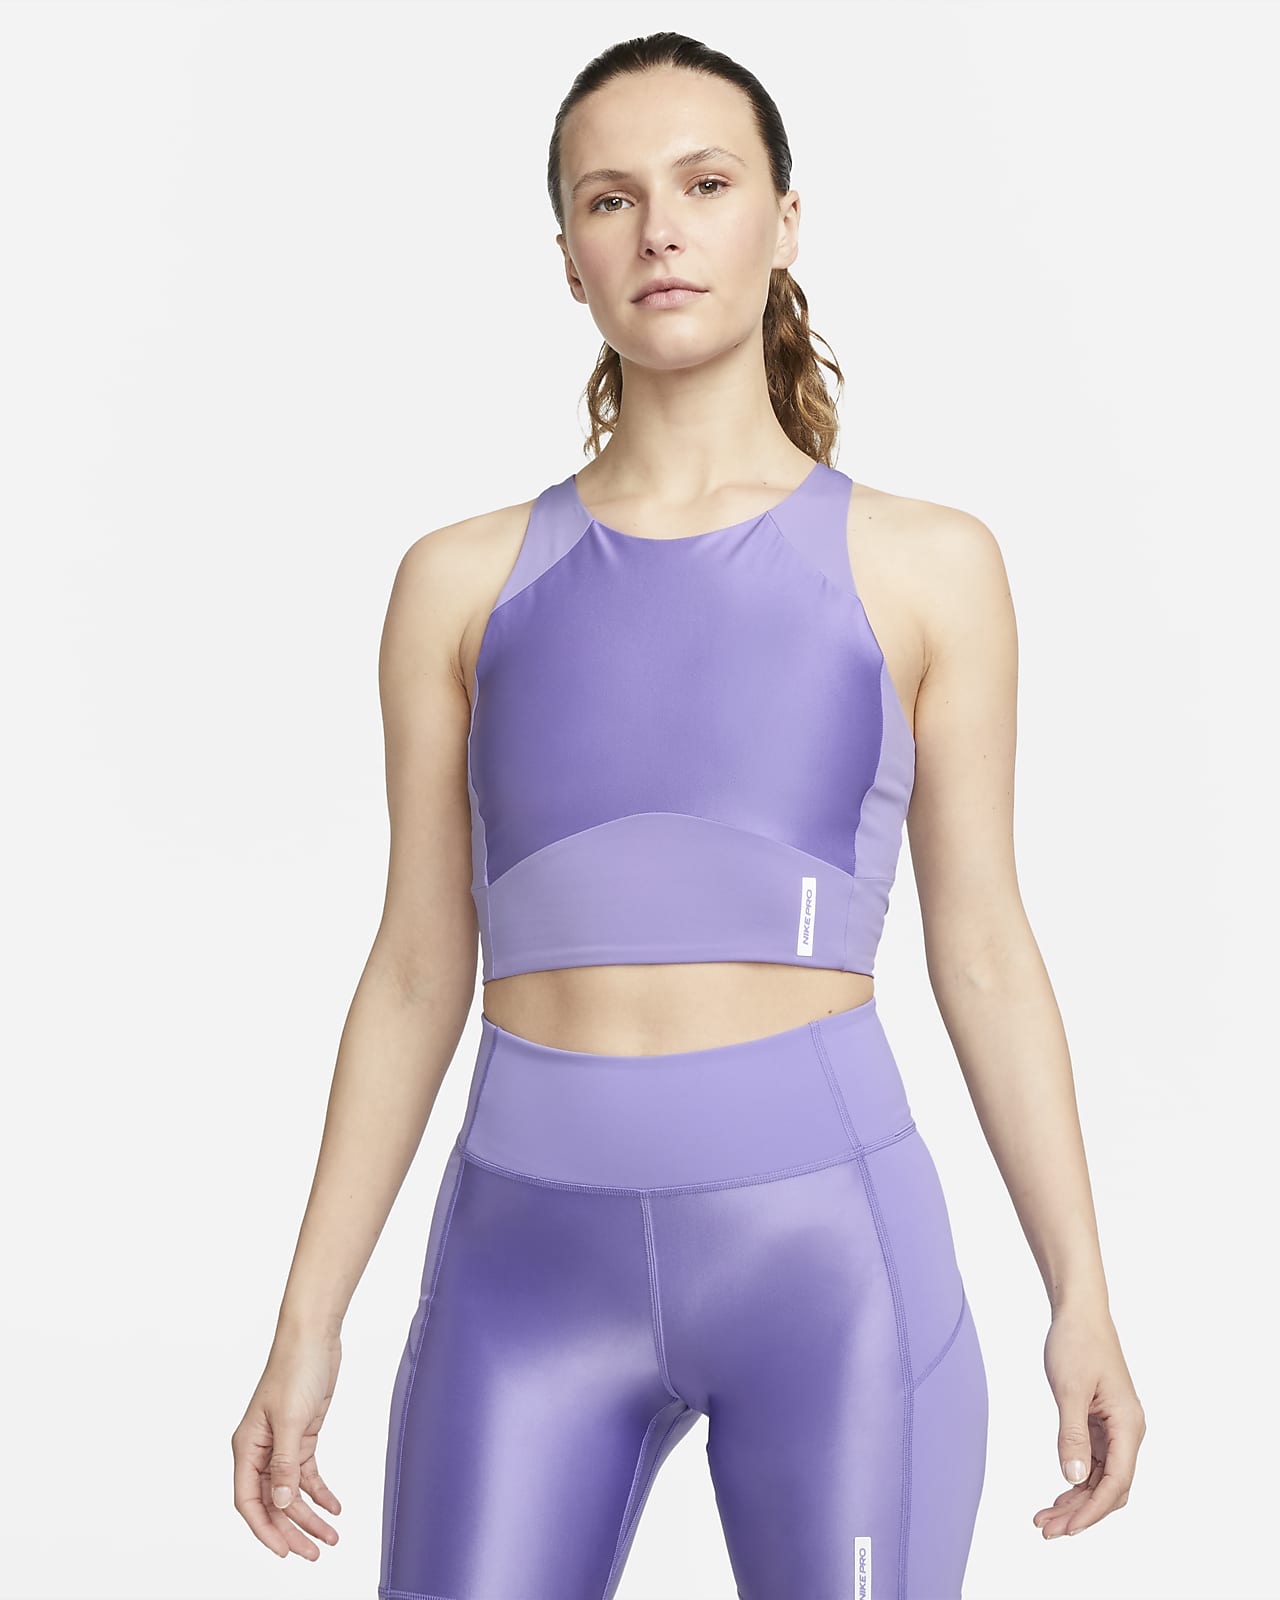 New Nike Women's Infinite Running Slim Fit Tank Top White Size